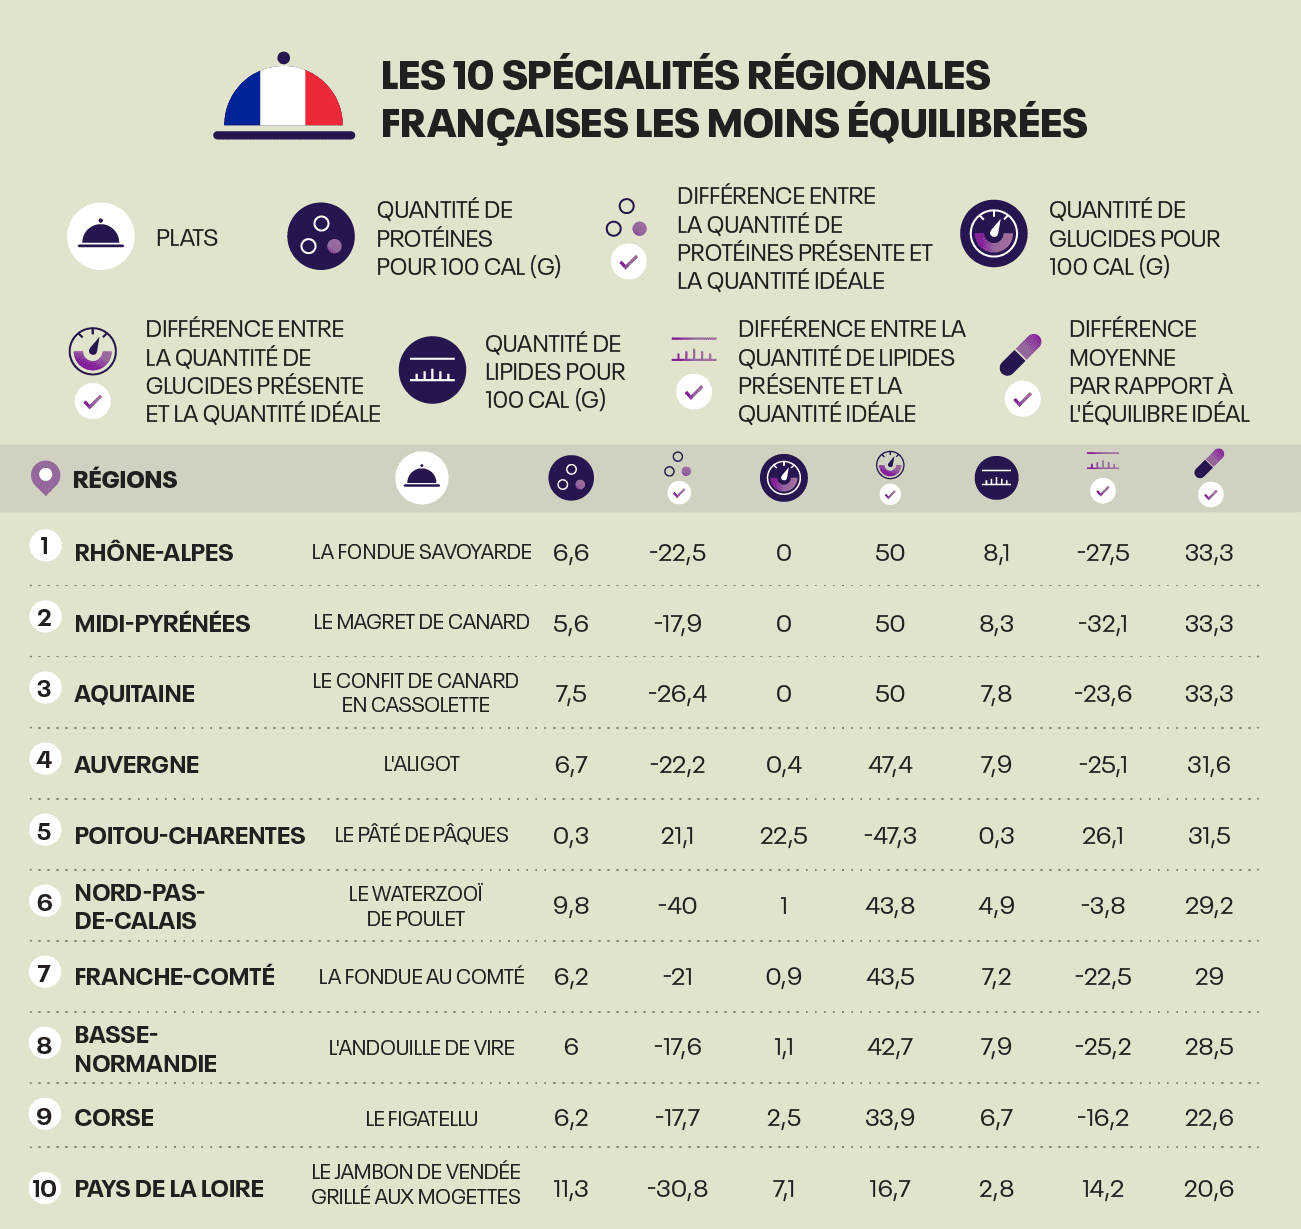 Les 10 specialites regionales Francaises les moins equilibrèes